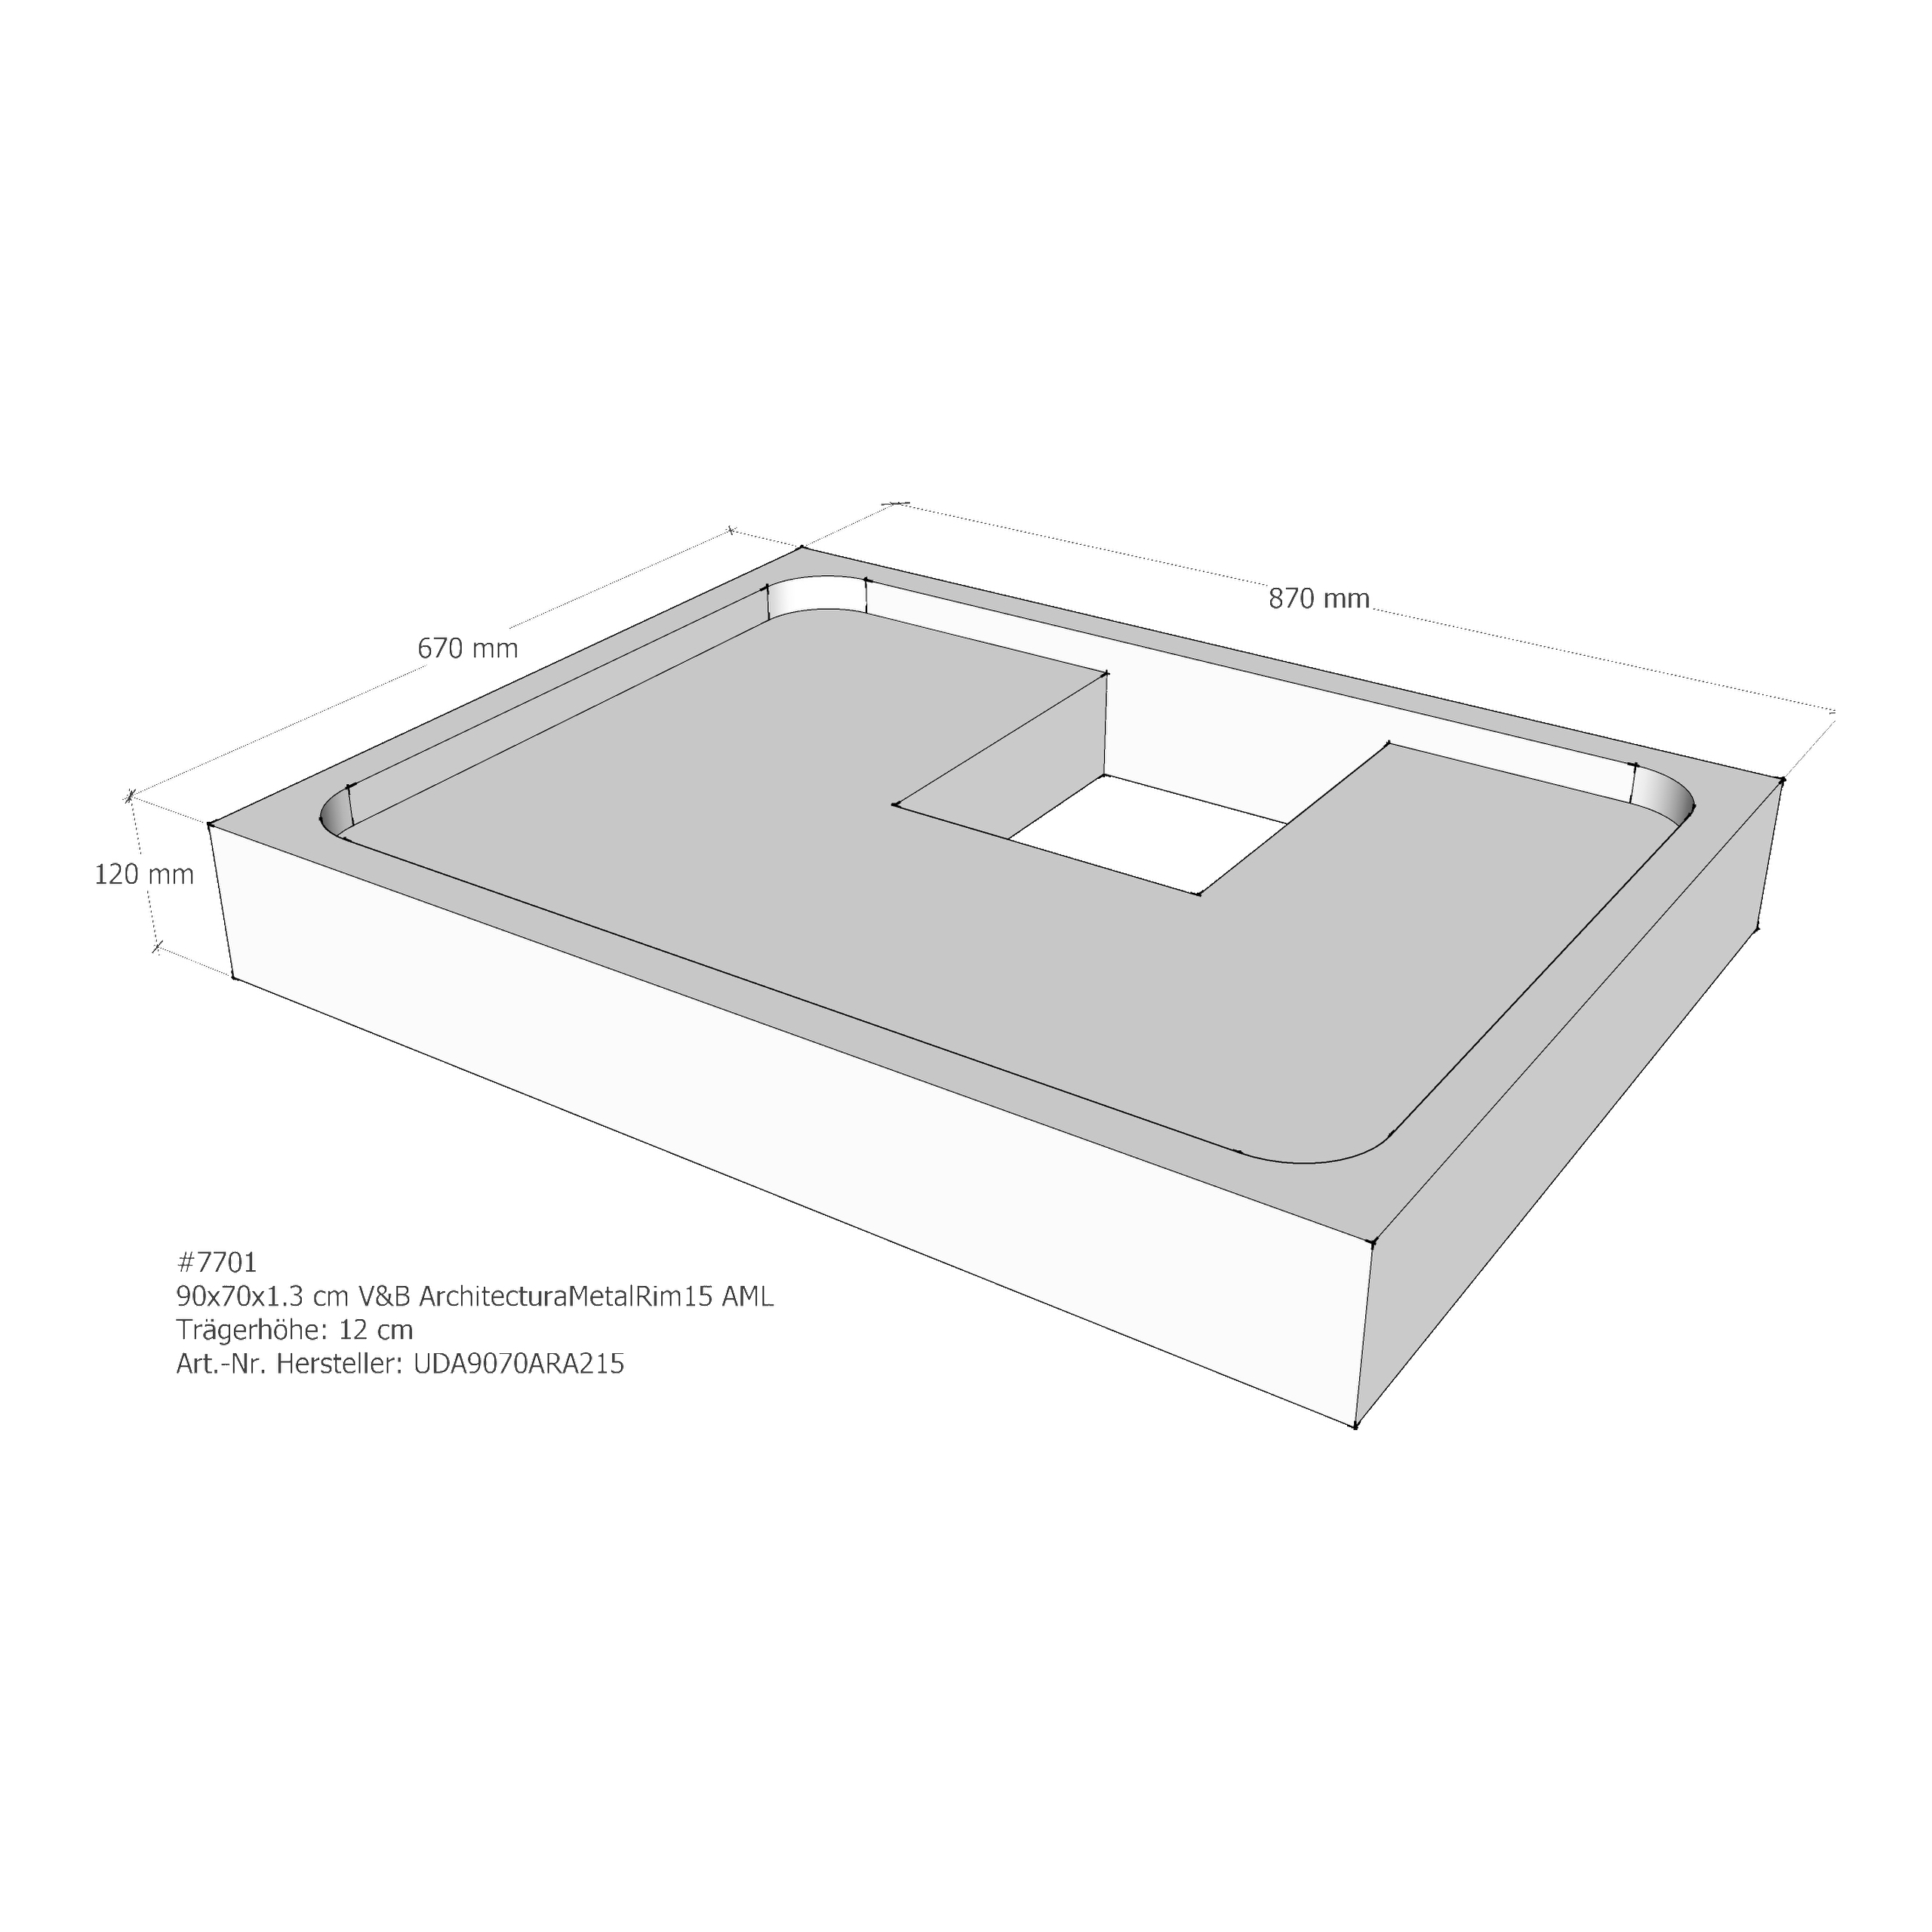 Duschwannenträger für Villeroy & Boch Architectura MetalRim 90 × 70 × 1,3 cm